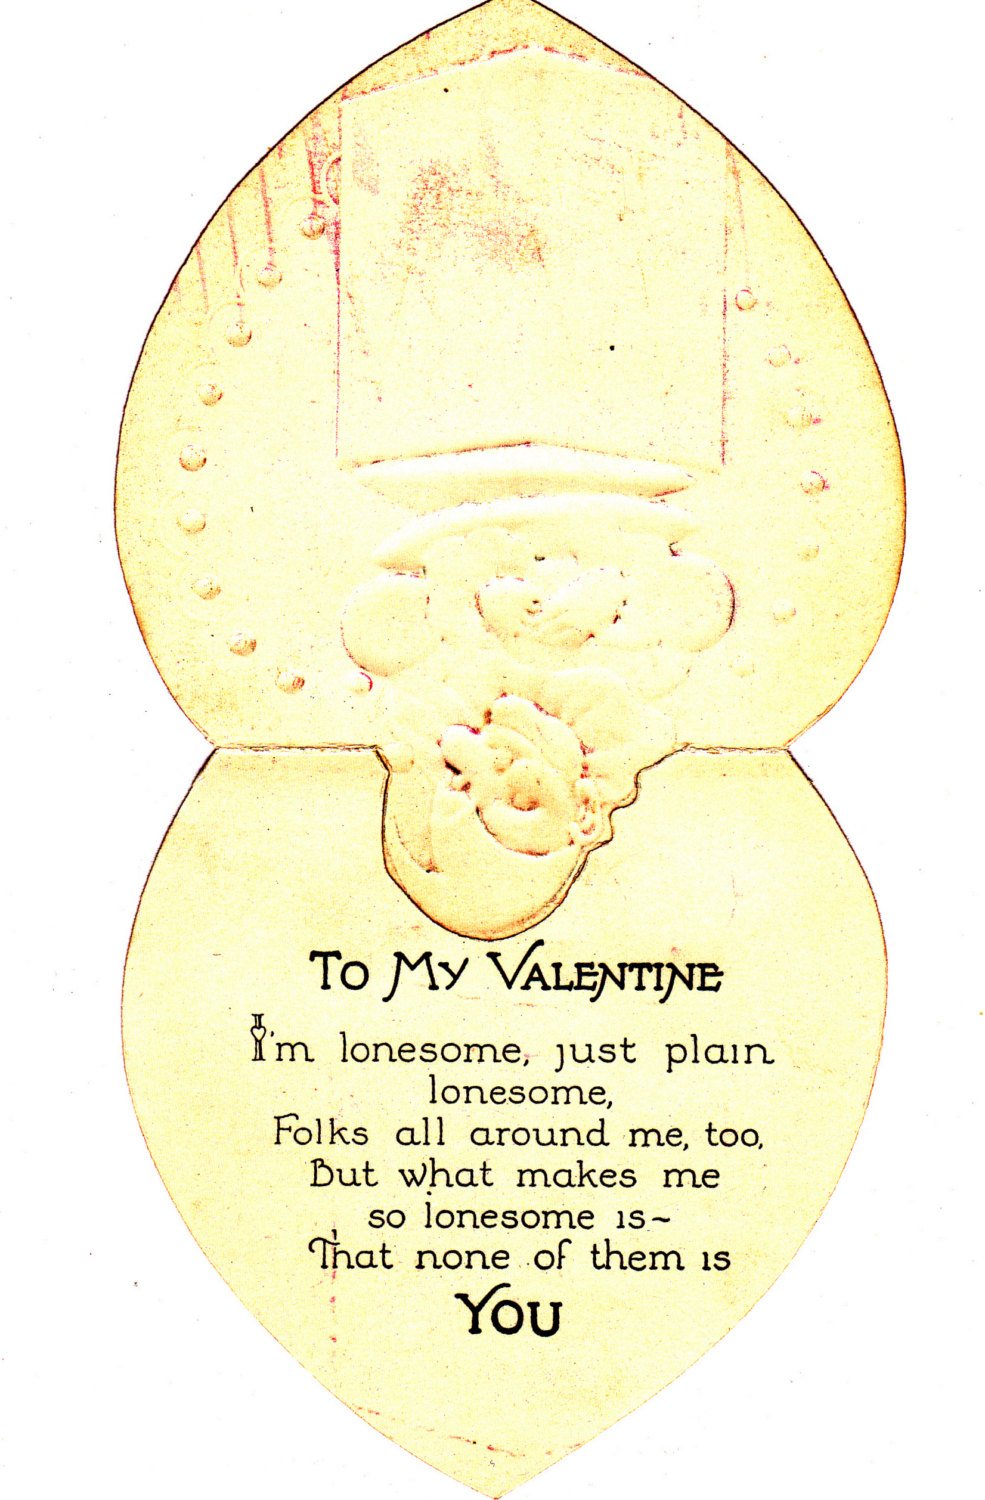 Vintage Valentine Bundle - Clowns - The Junk Parlor